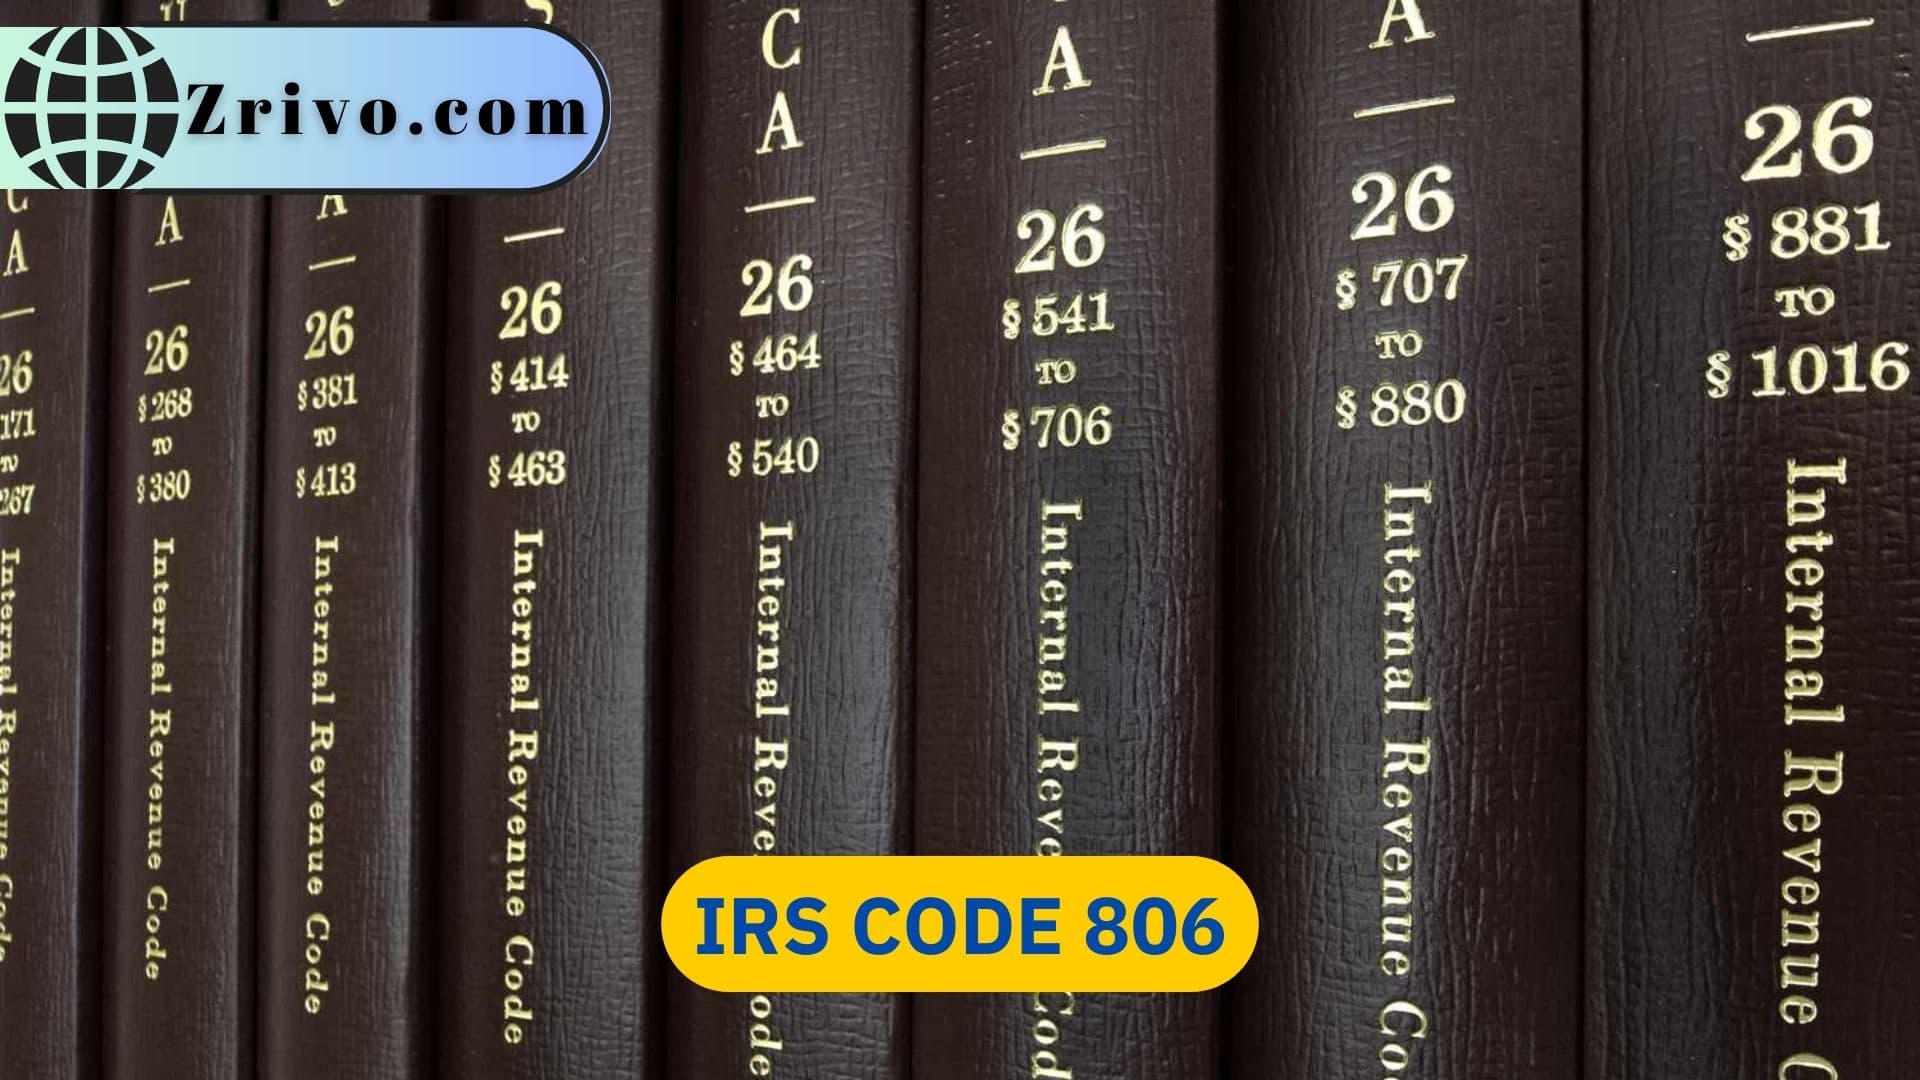 IRS Code 806